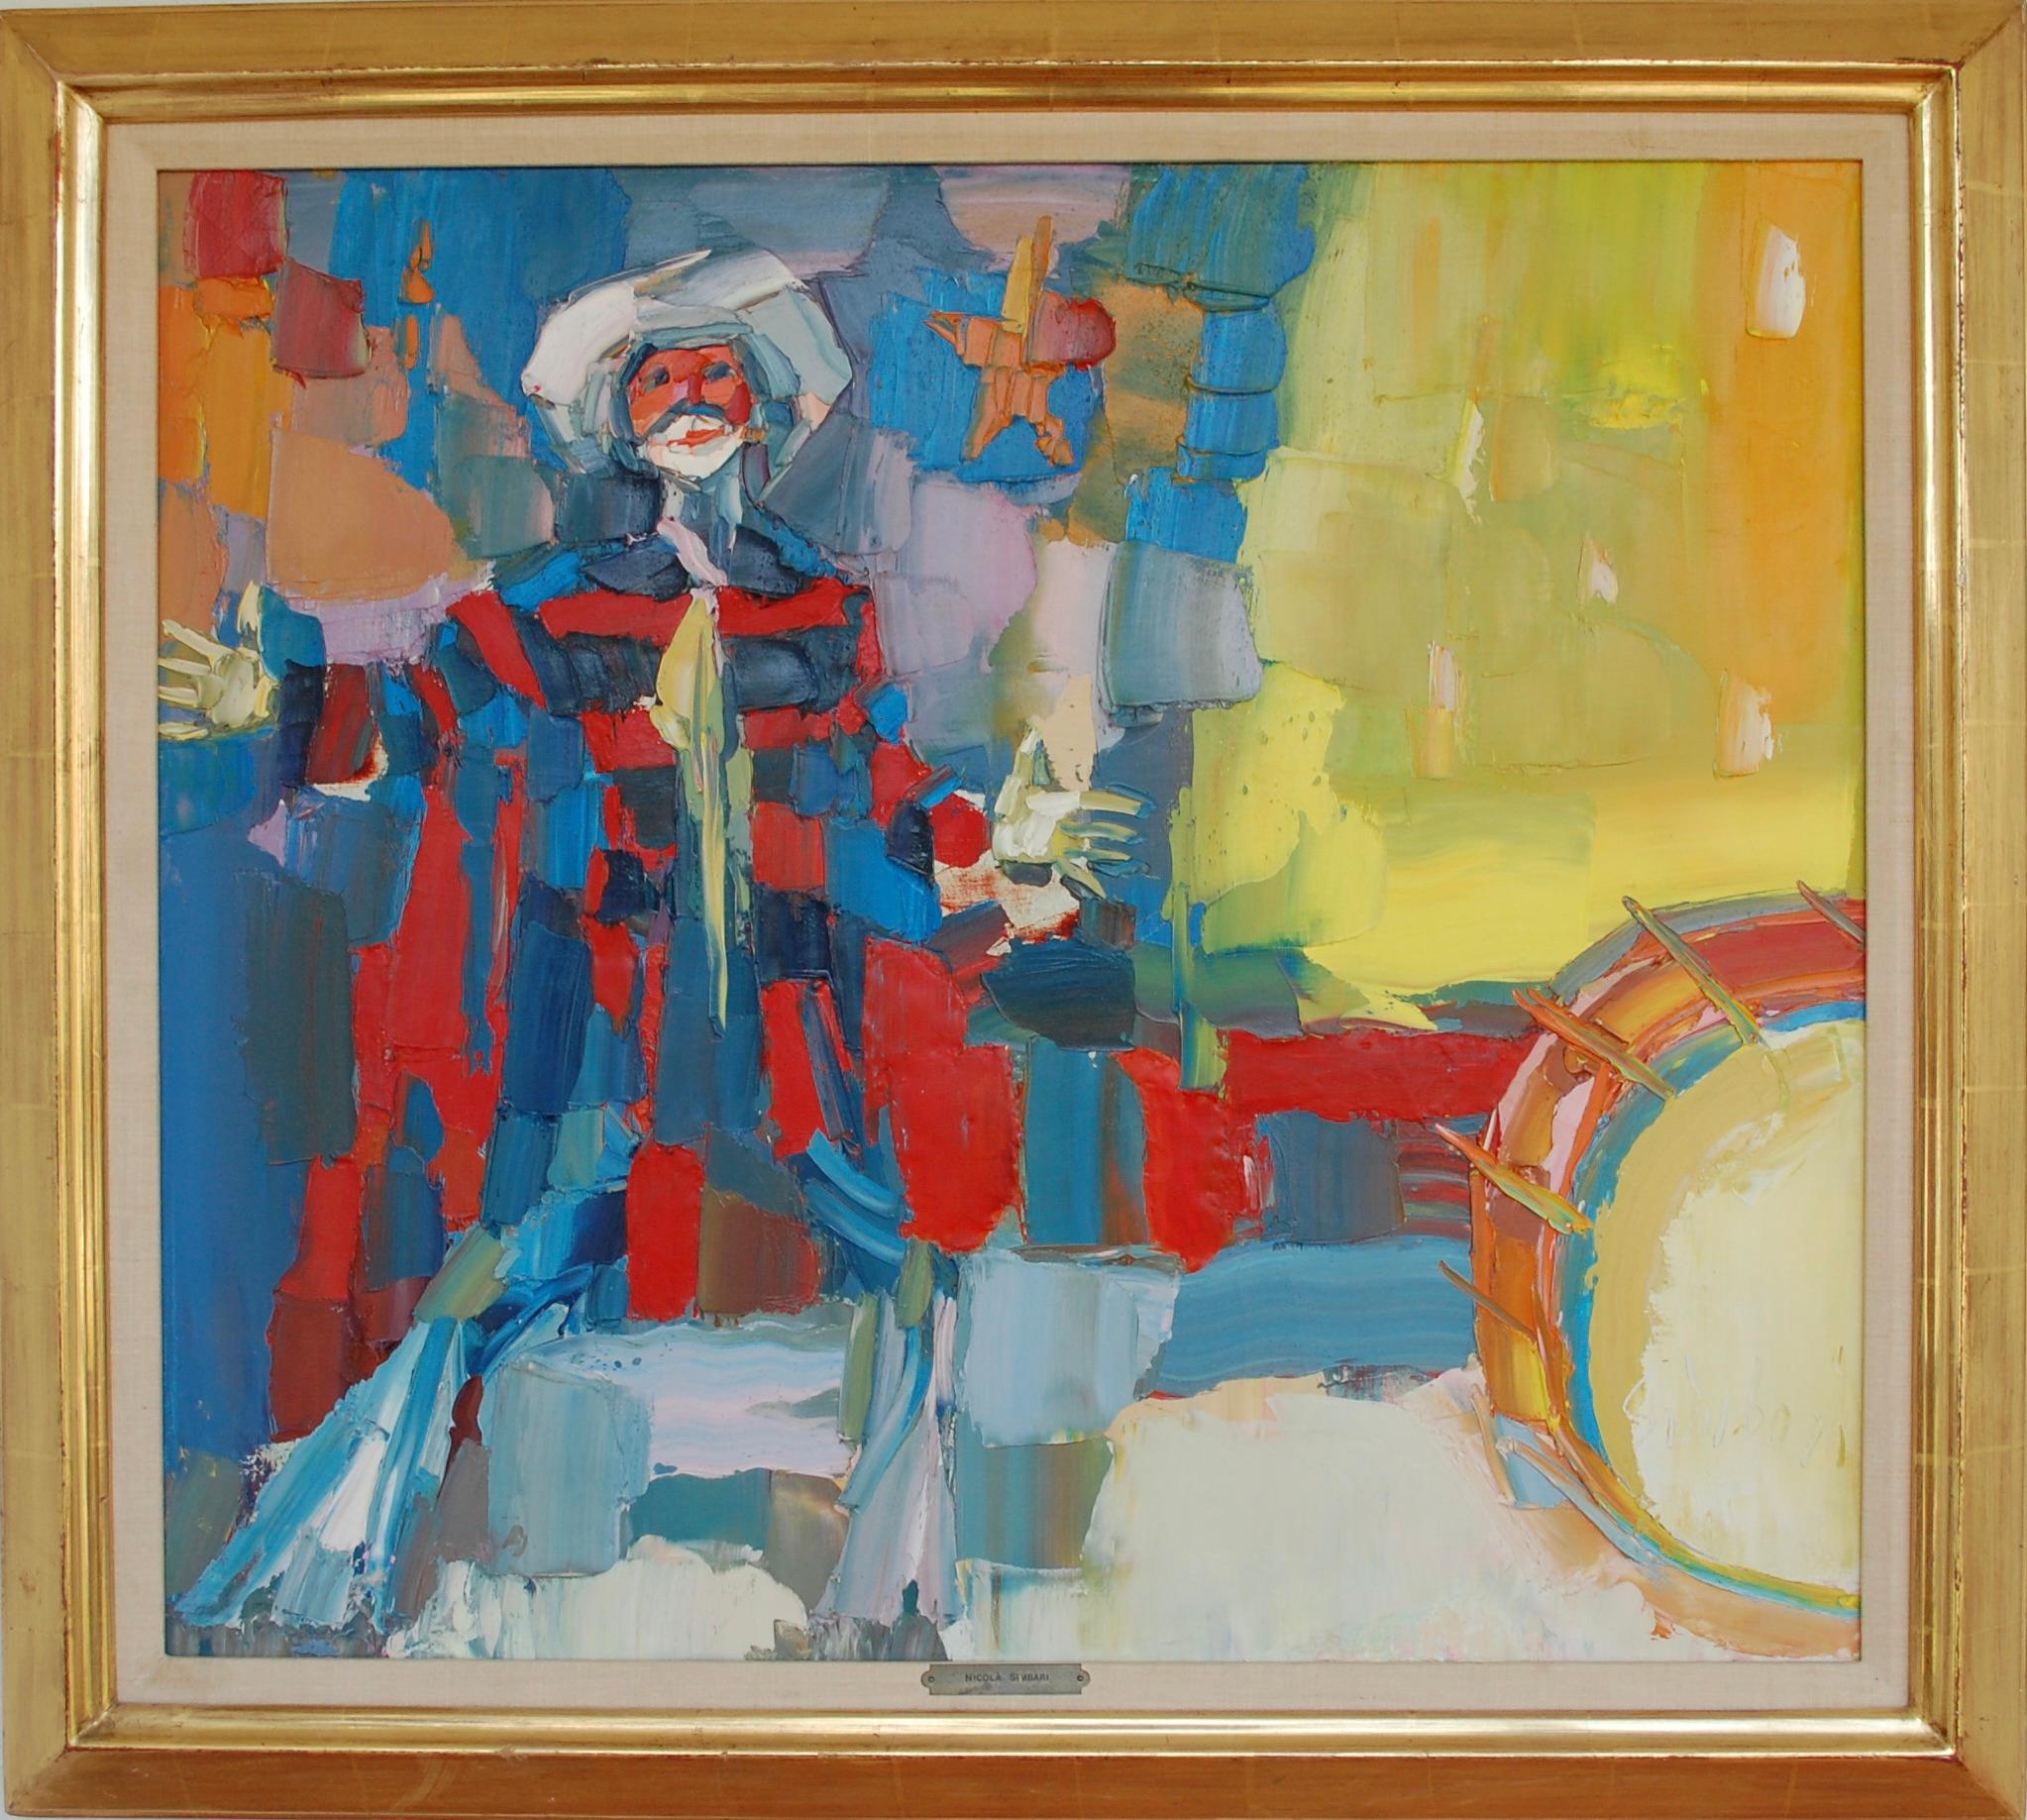 Interprète
Signature de l'artiste en bas à droite, toile 28 "x31"75
Nicola Simbari est né en Italie et a grandi à Rome. Il a étudié à l'Accademia di Belle Arti di Roma et, dans les années 1940, il a commencé à se consacrer à la peinture dans un